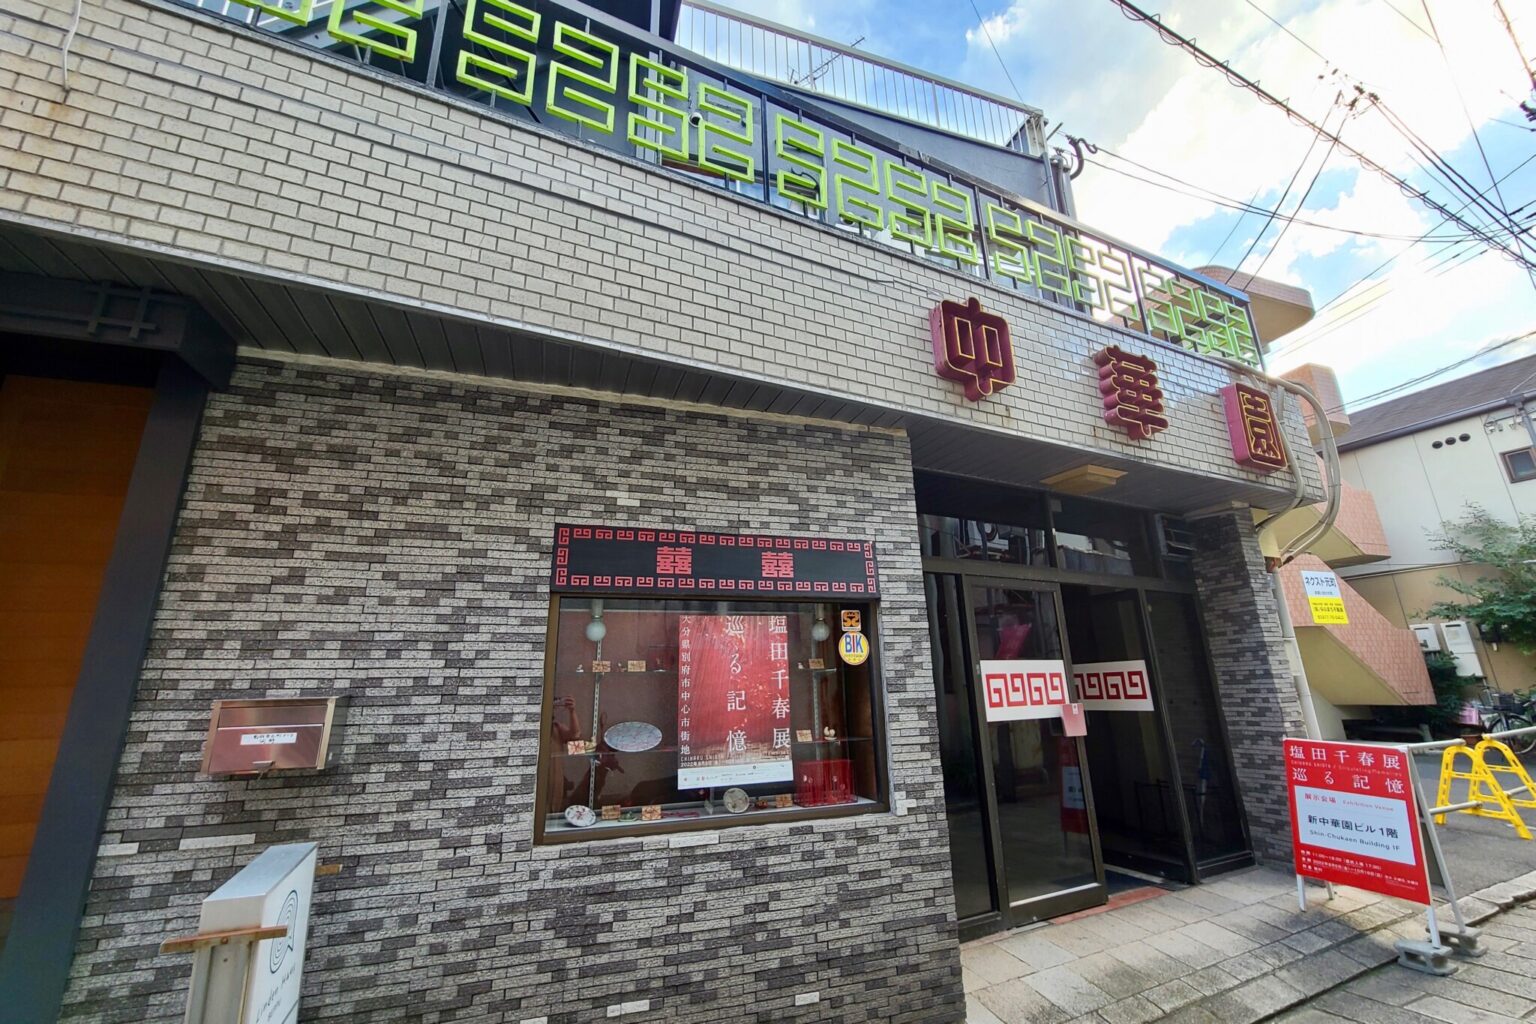 続きはさらに〈草本商店〉の向かいにある中華料理屋へ。